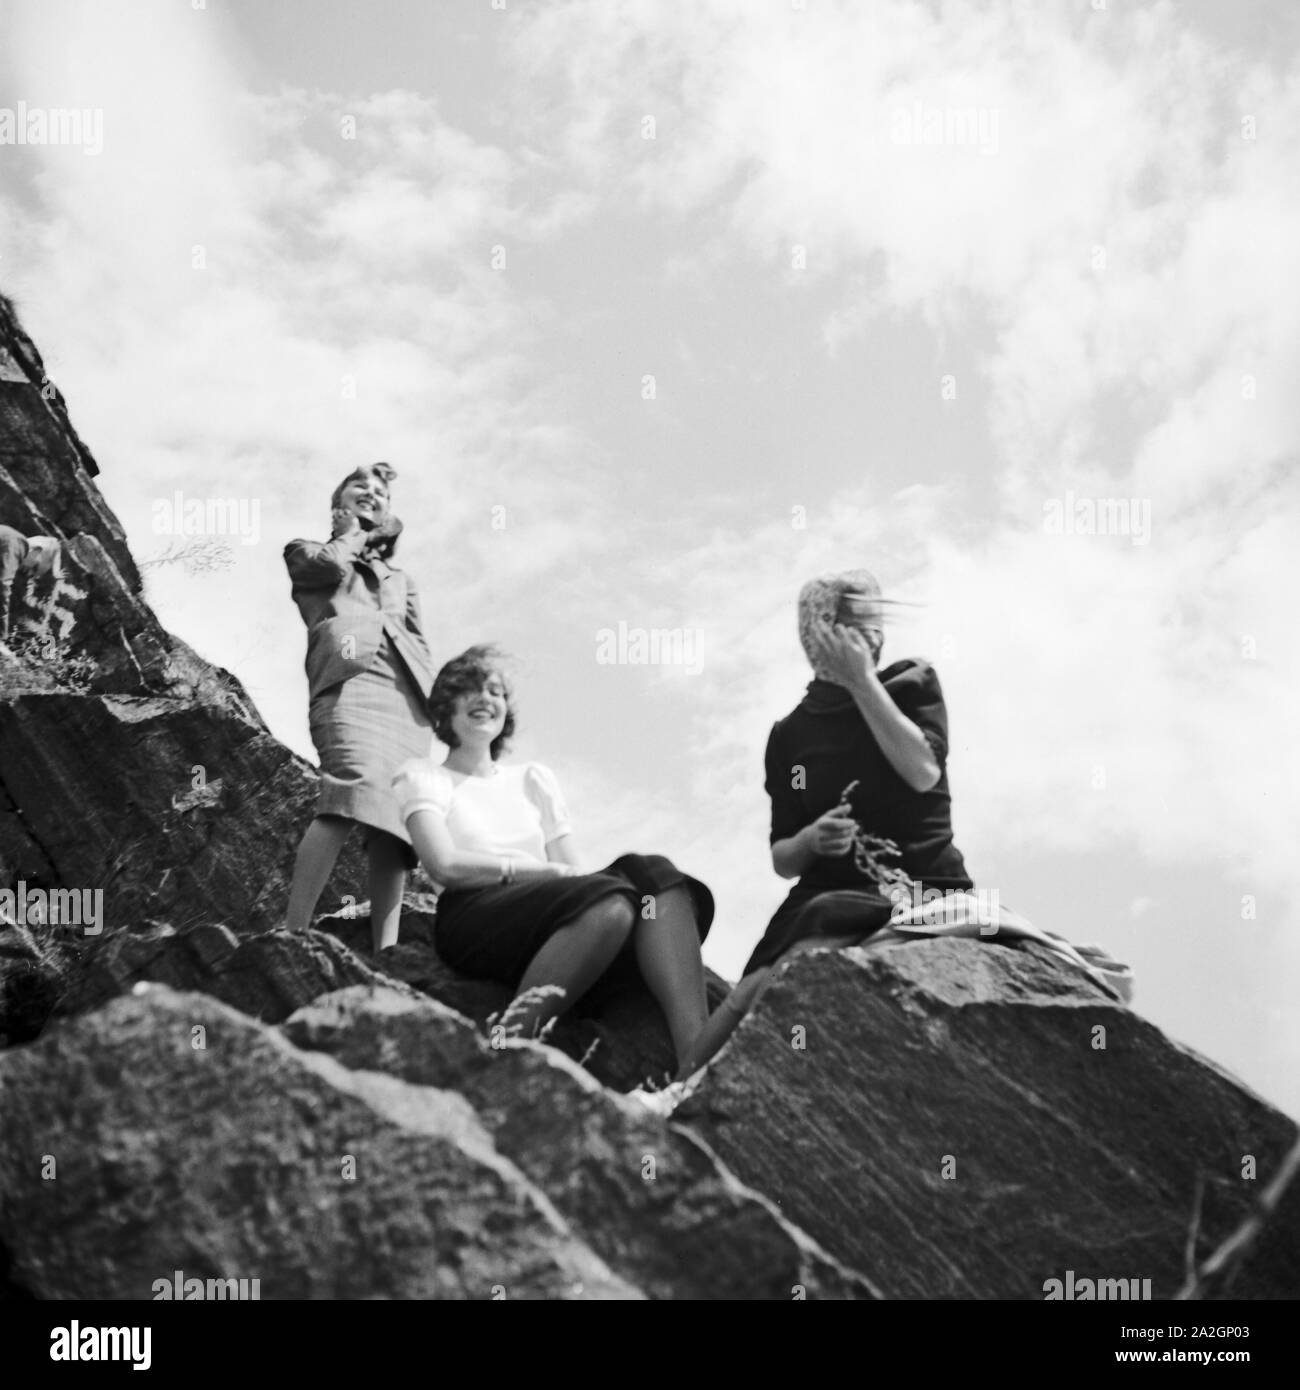 Drei junge Frauen haben einen Gipfel n der Wachau in Österreich erklommen, Deutschland 1930er Jahe. Three young woman reached the peak of a mountain in the Wachau area in Austria, Germany 1930s. Stock Photo